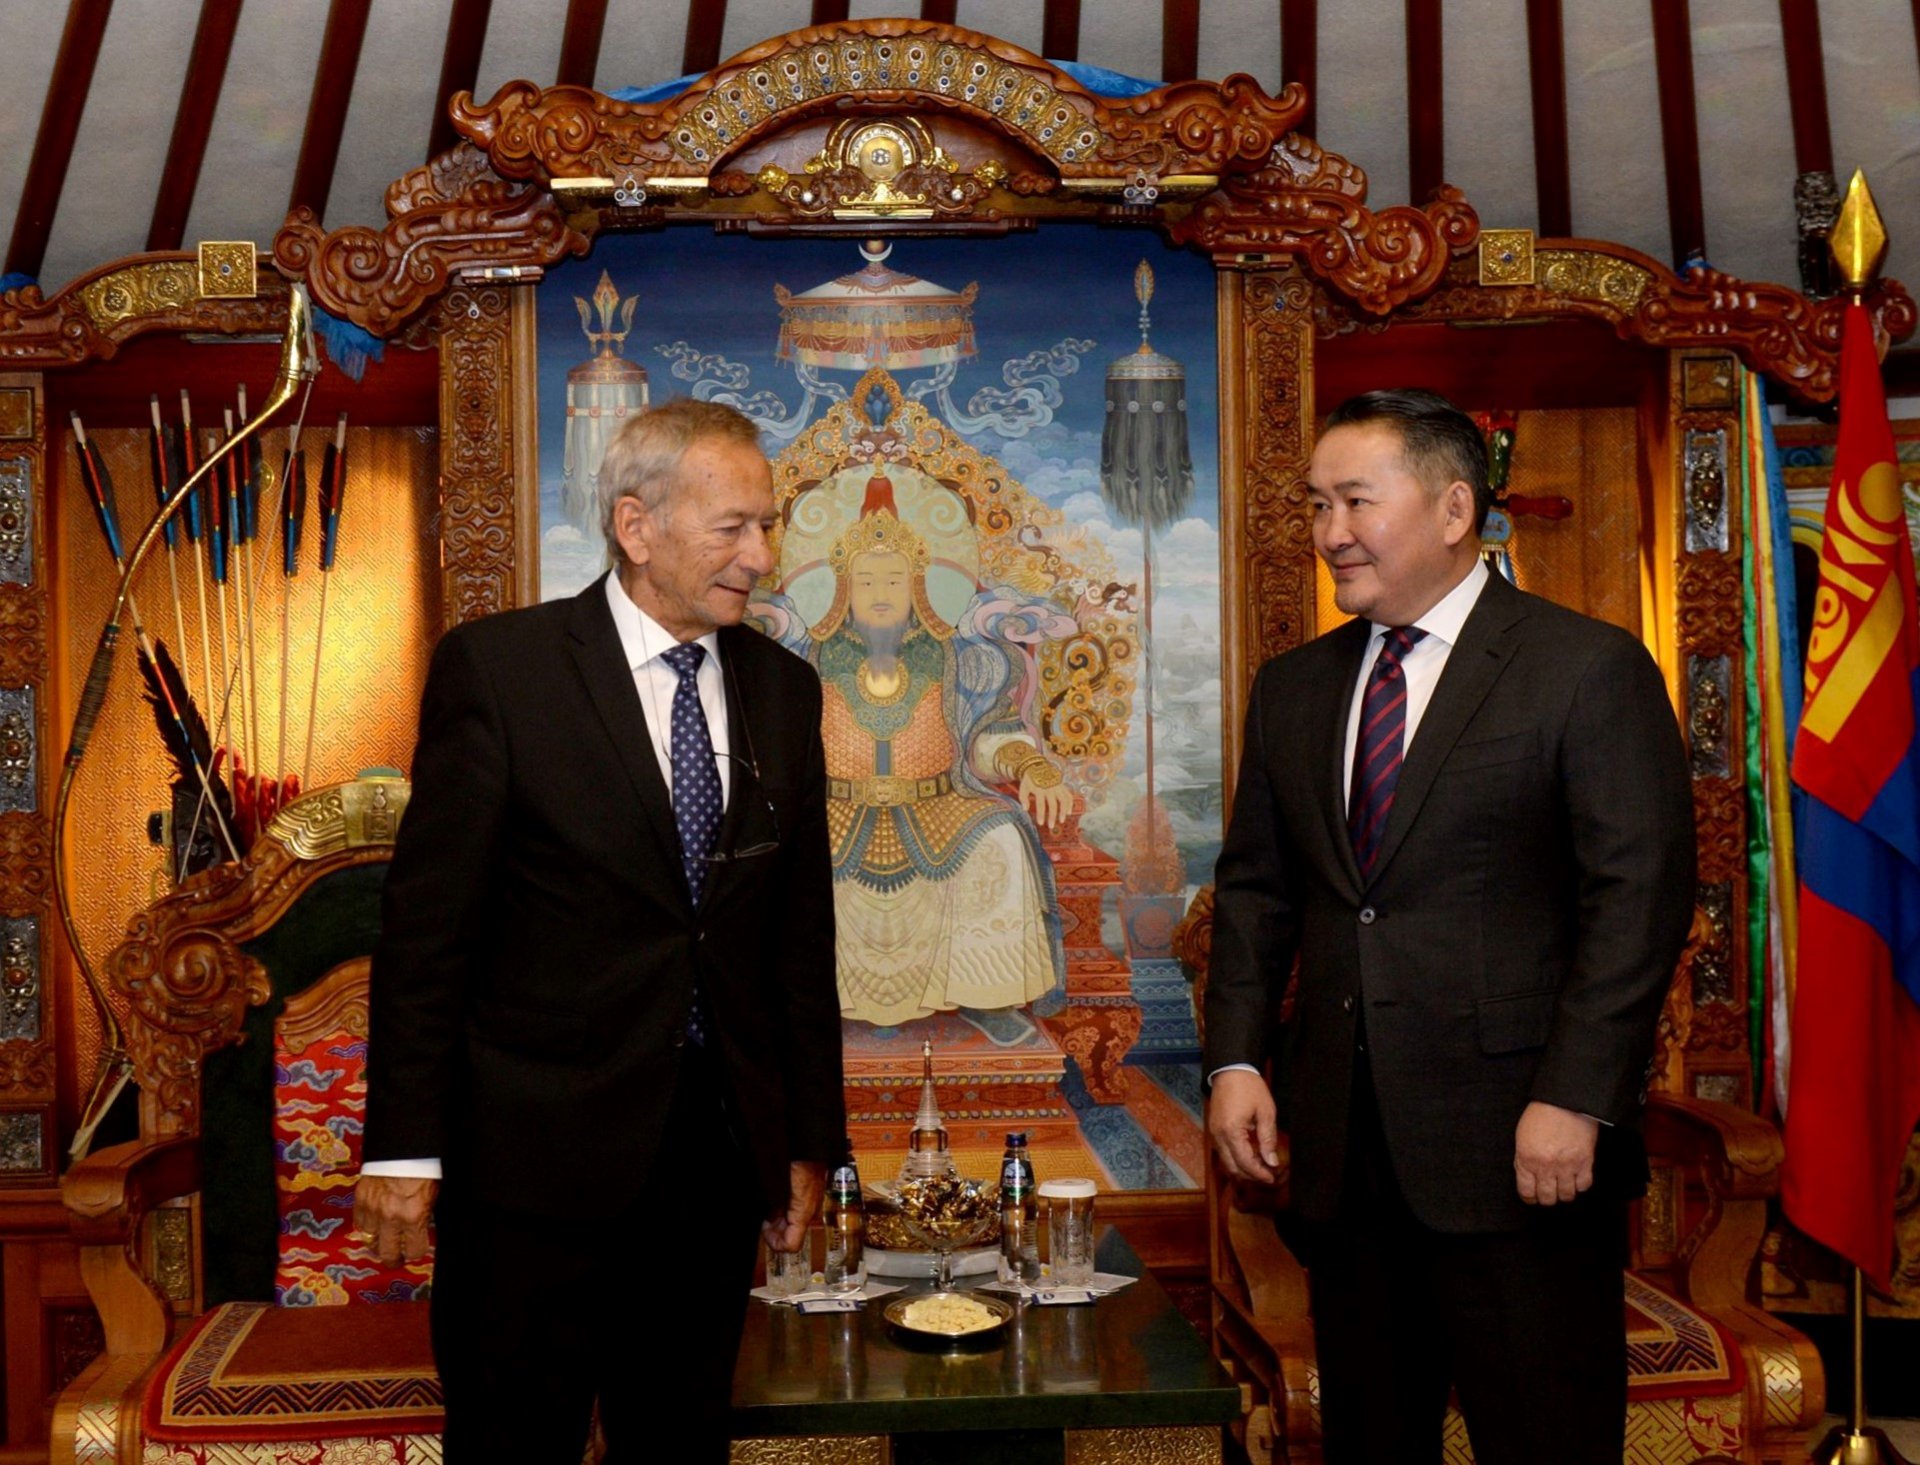 Бүгд Найрамдах Чех улсын Парламентын Сенатын танхимын Ерөнхийлөгч Ярослав Кубера Монгол Улсын Ерөнхийлөгч Х.Баттулгад бараалхлаа